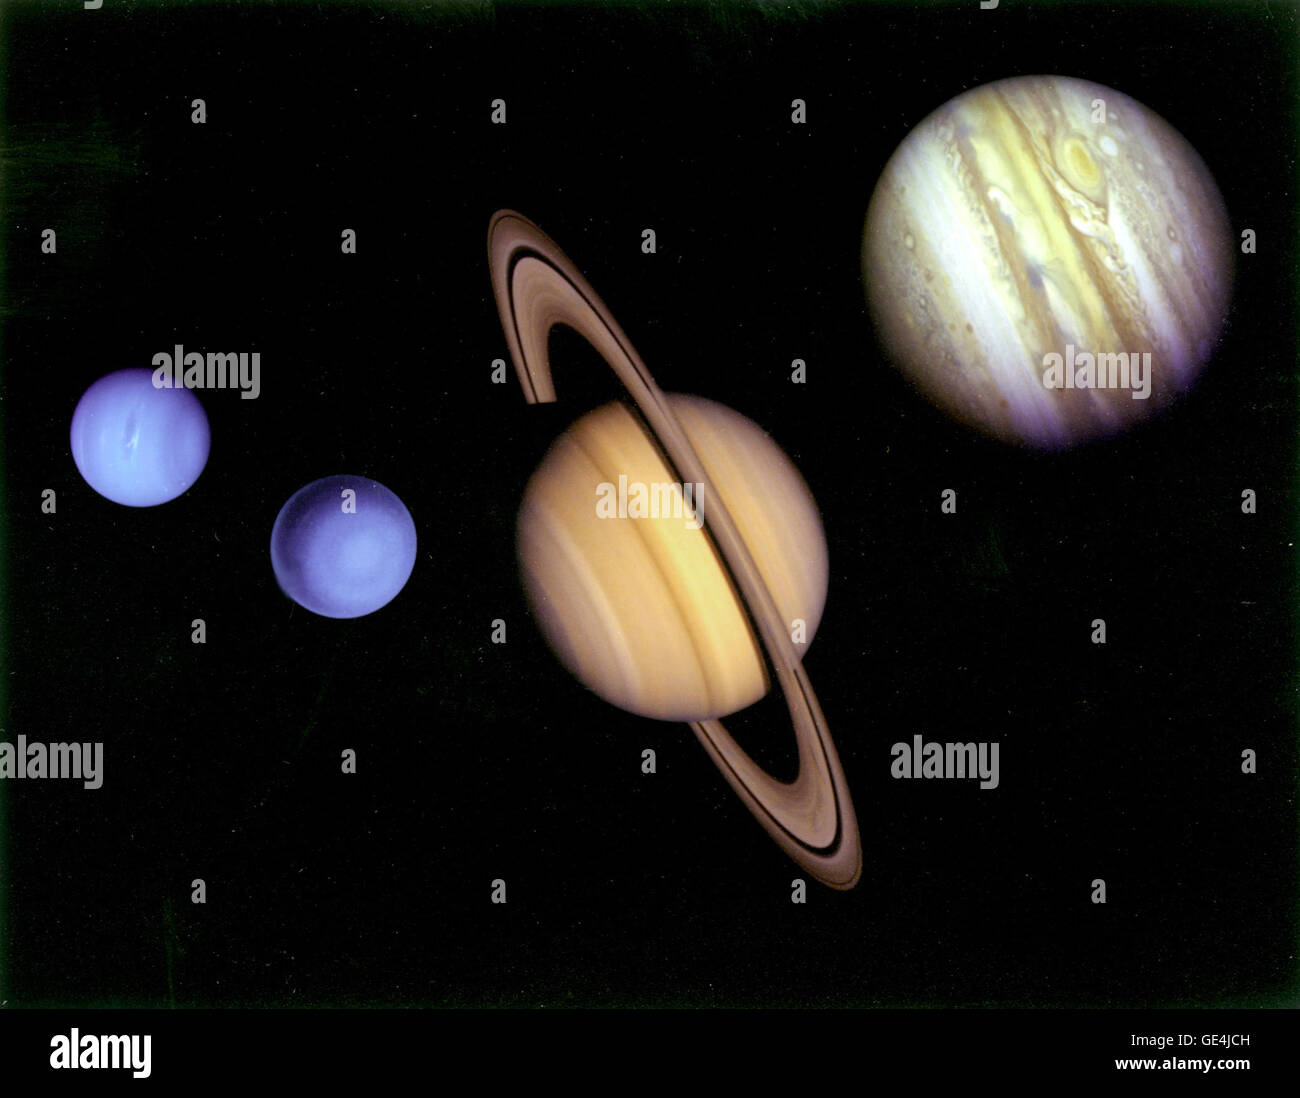 Diese Montage von Bildern der Planeten besucht von Voyager 2 wurde aus einer Assemblage von Aufnahmen der Raumsonde Voyager 2 hergestellt. Das Voyager-Projekt wird für die NASA vom Jet Propulsion Laboratory, Pasadena, Kalifornien geleitet.  Bild-Nr.: PIA01483 Stockfoto